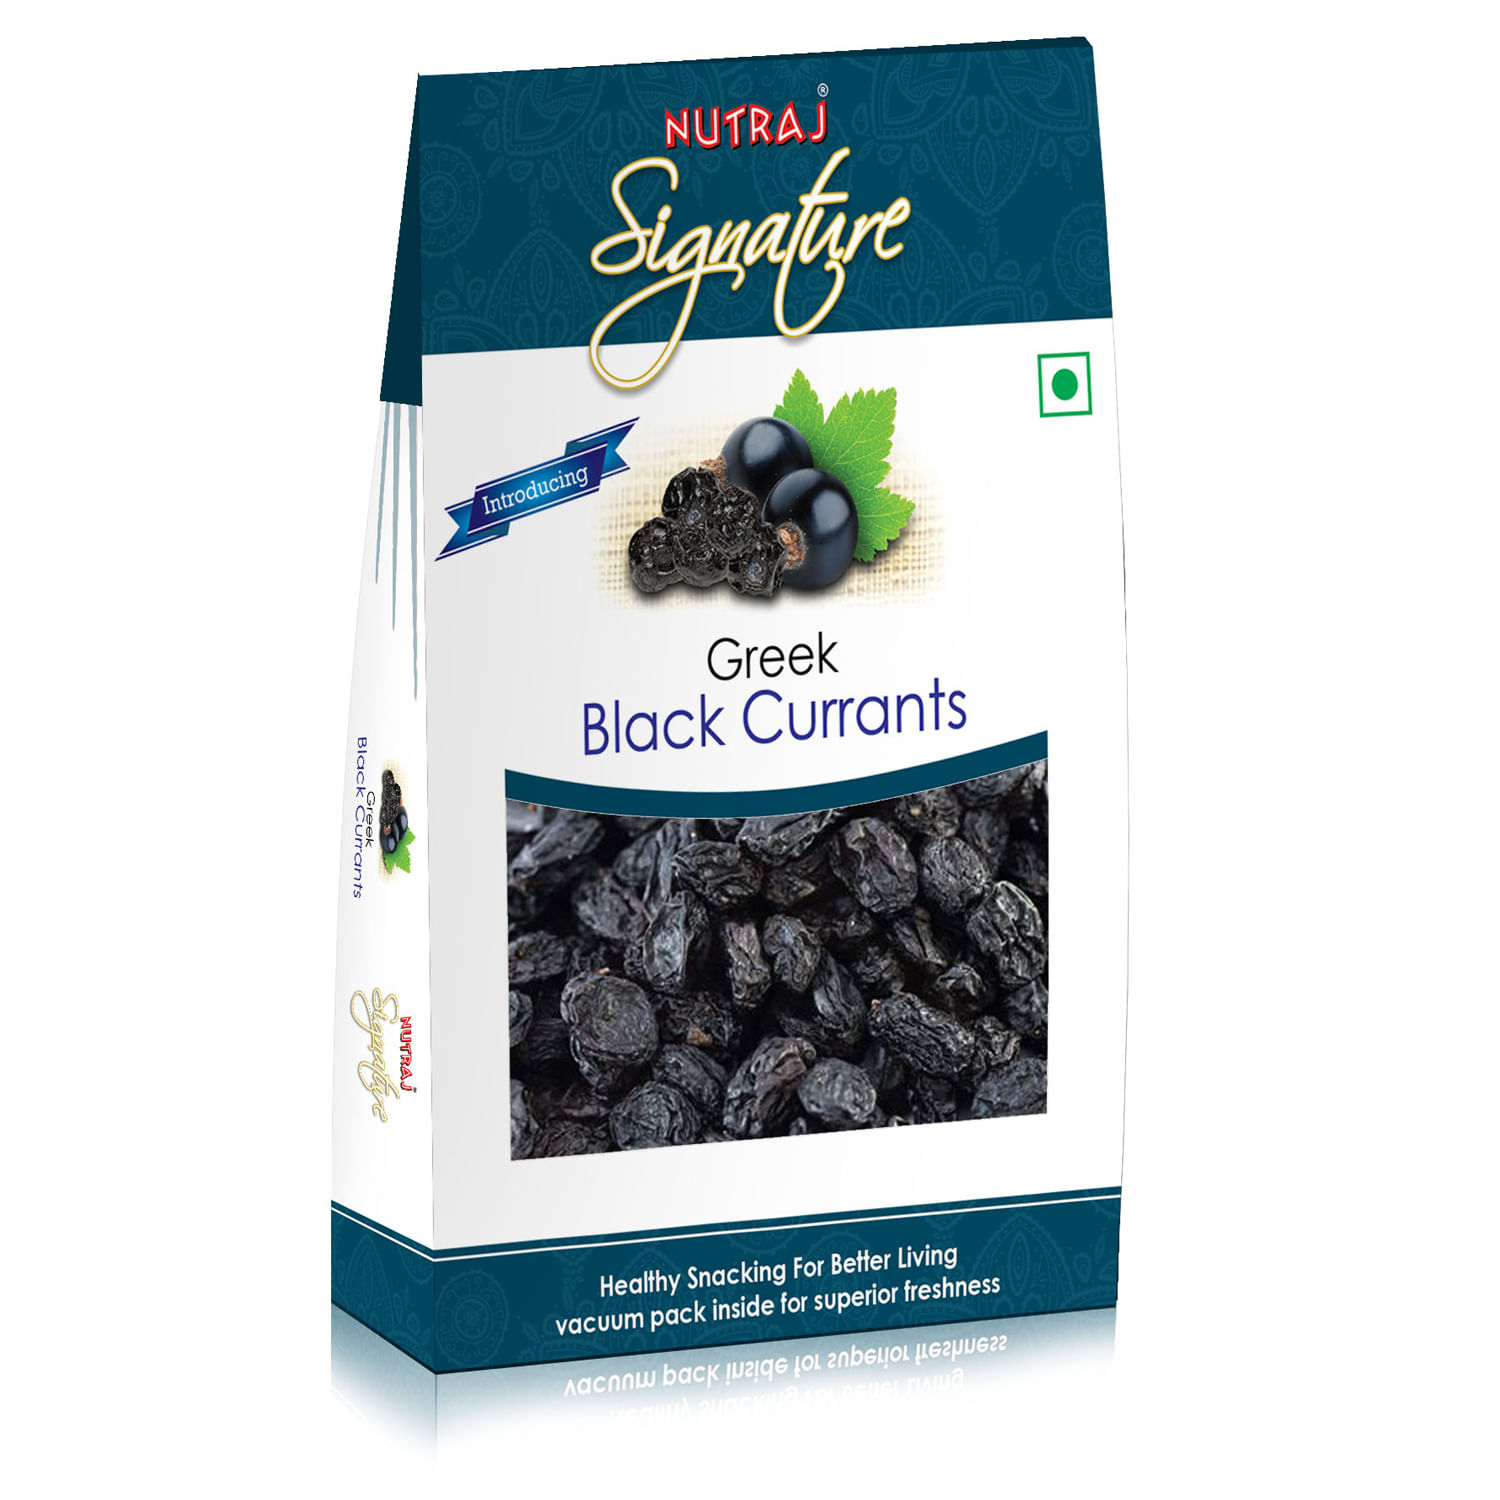 Nutraj Signature Black Currant 300g (3 X 100g) - Vacuum Pack